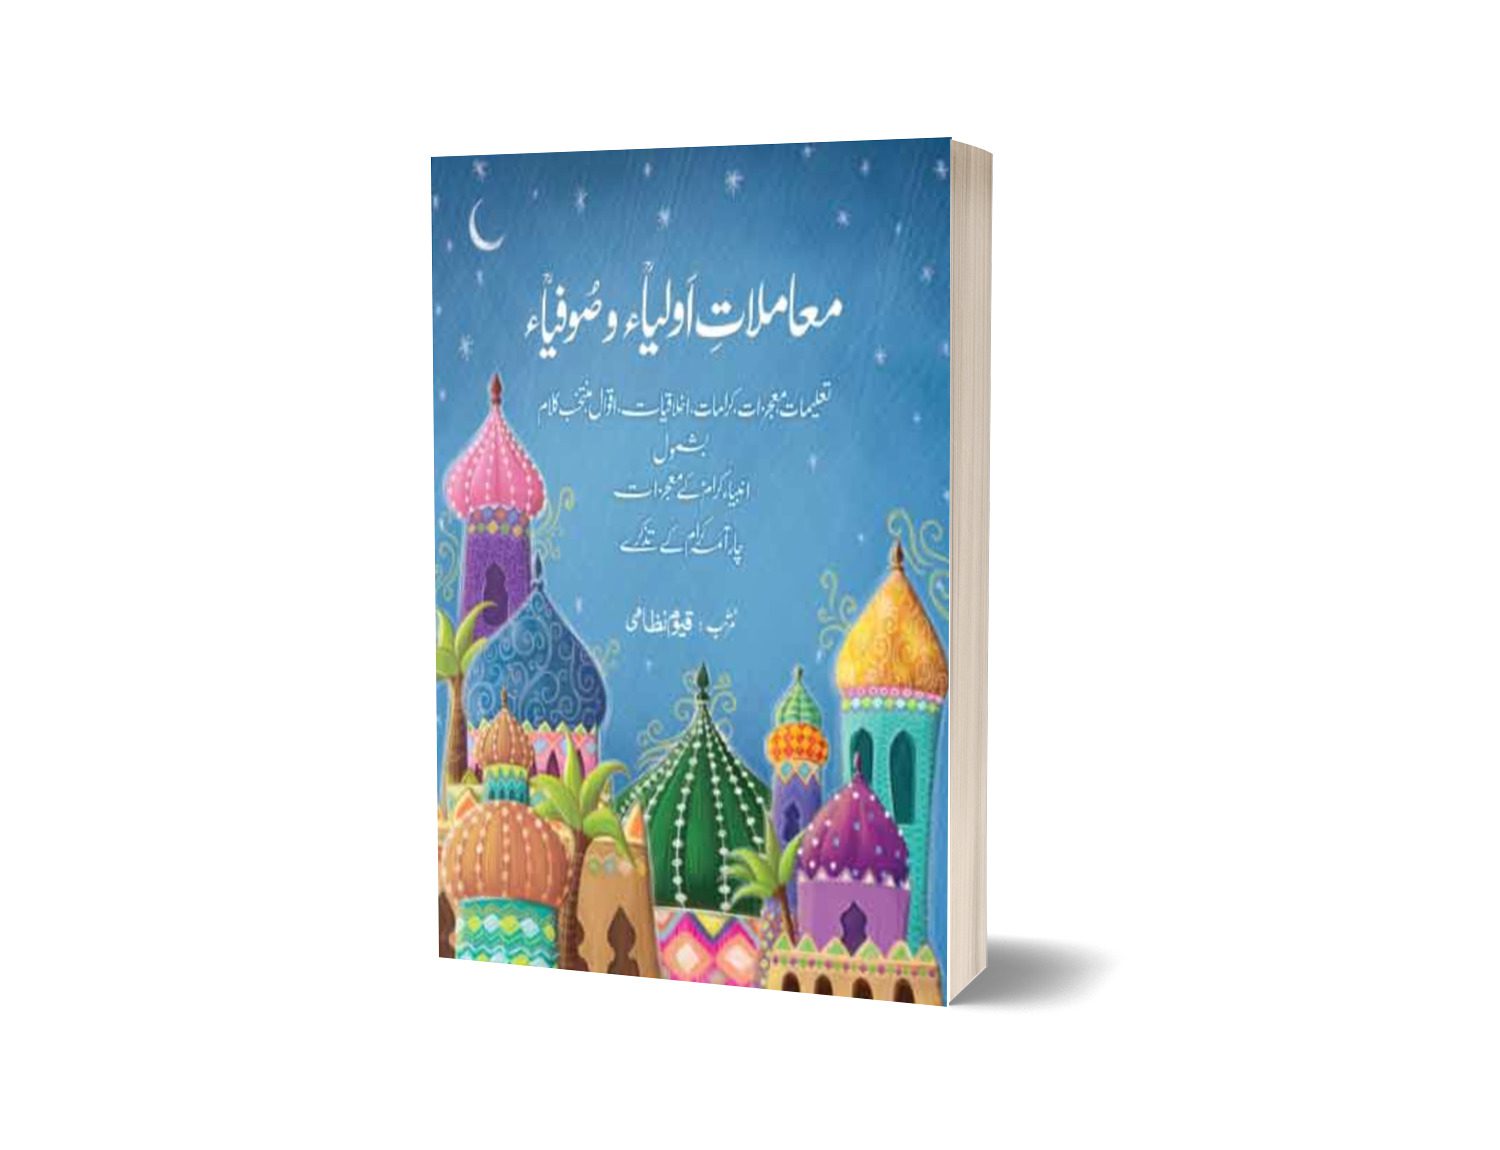 Muamlat E Aoliya Ikram For Islamic Study By Qayyum Nizami - JWT 550